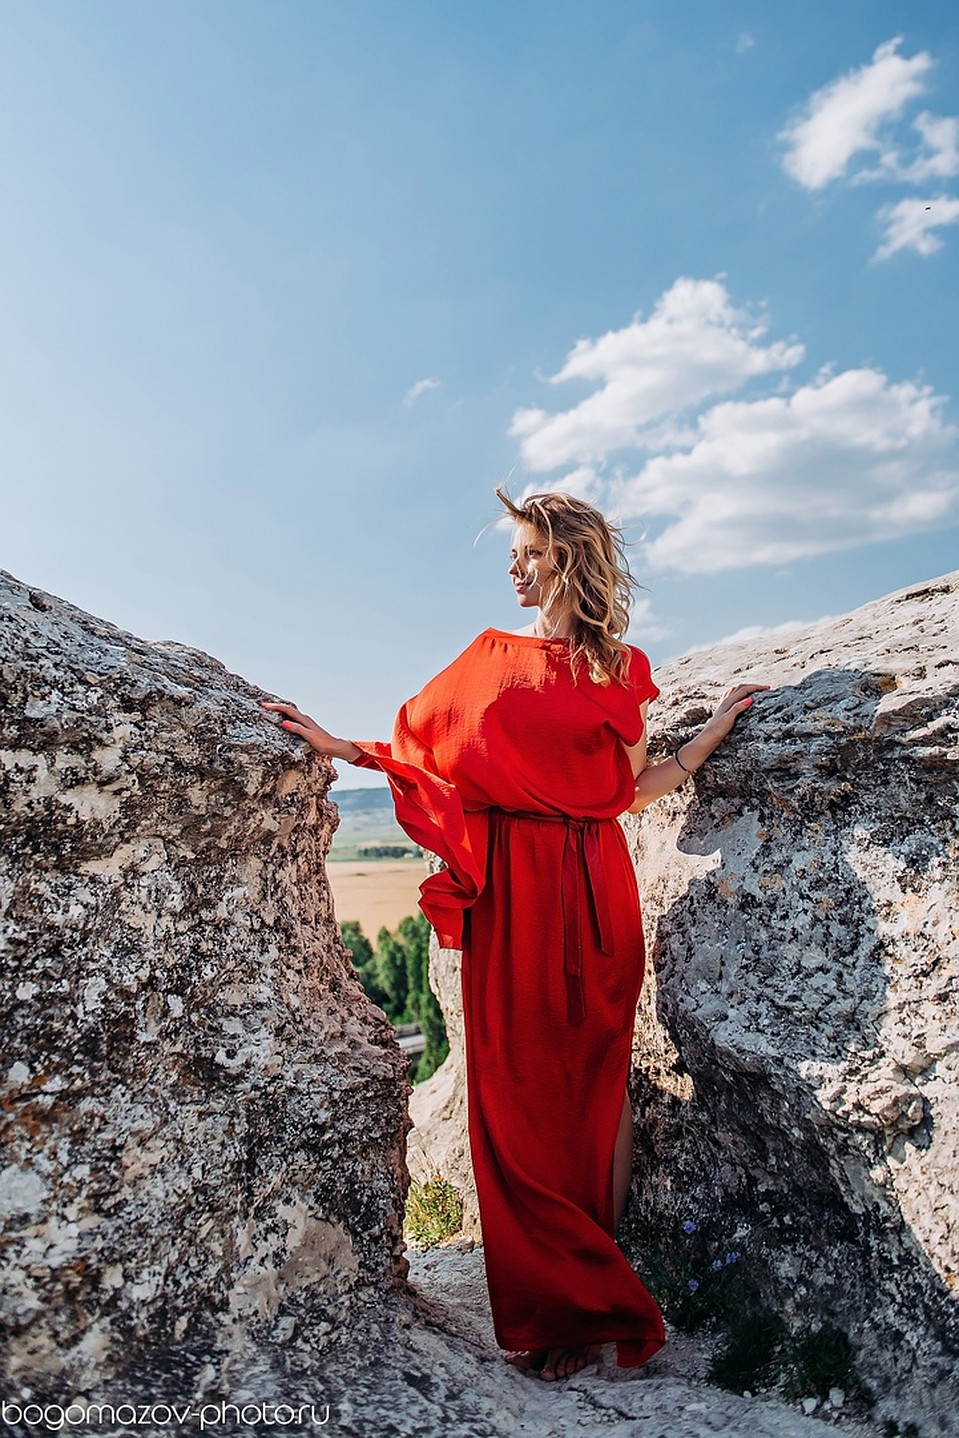 Снимок в красном платье. Фото: Александр Богомазов/VK 